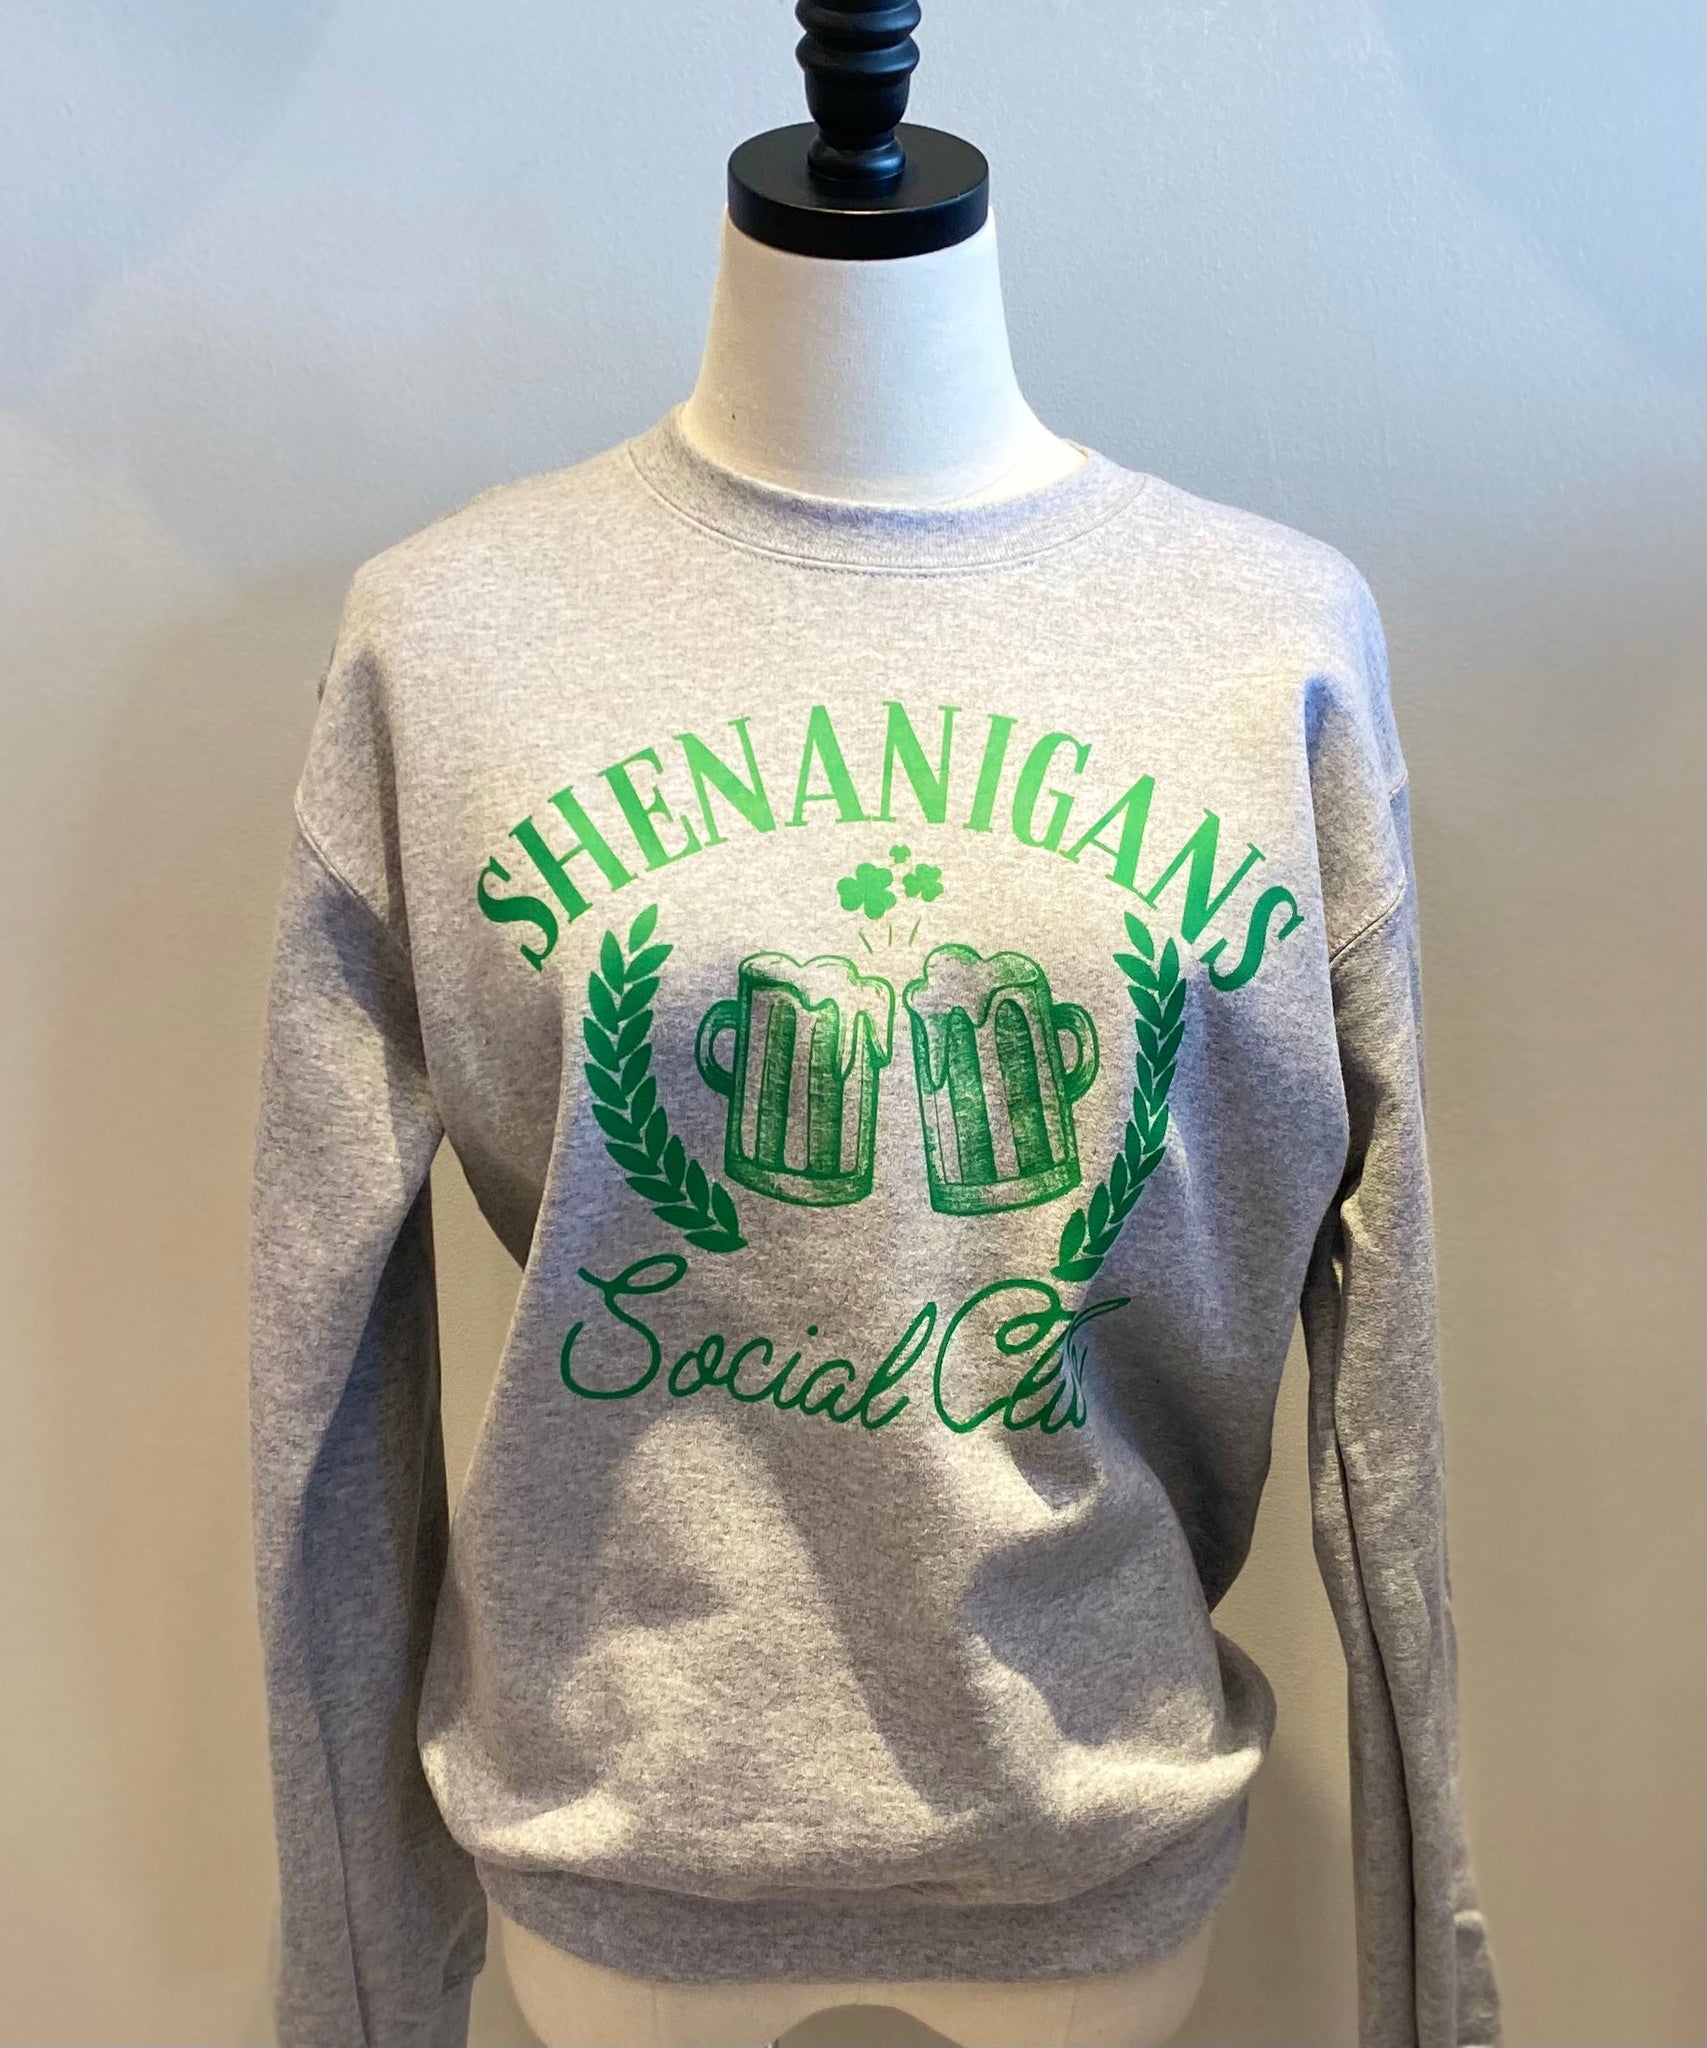 Shenanigans Social Club Sweatshirt